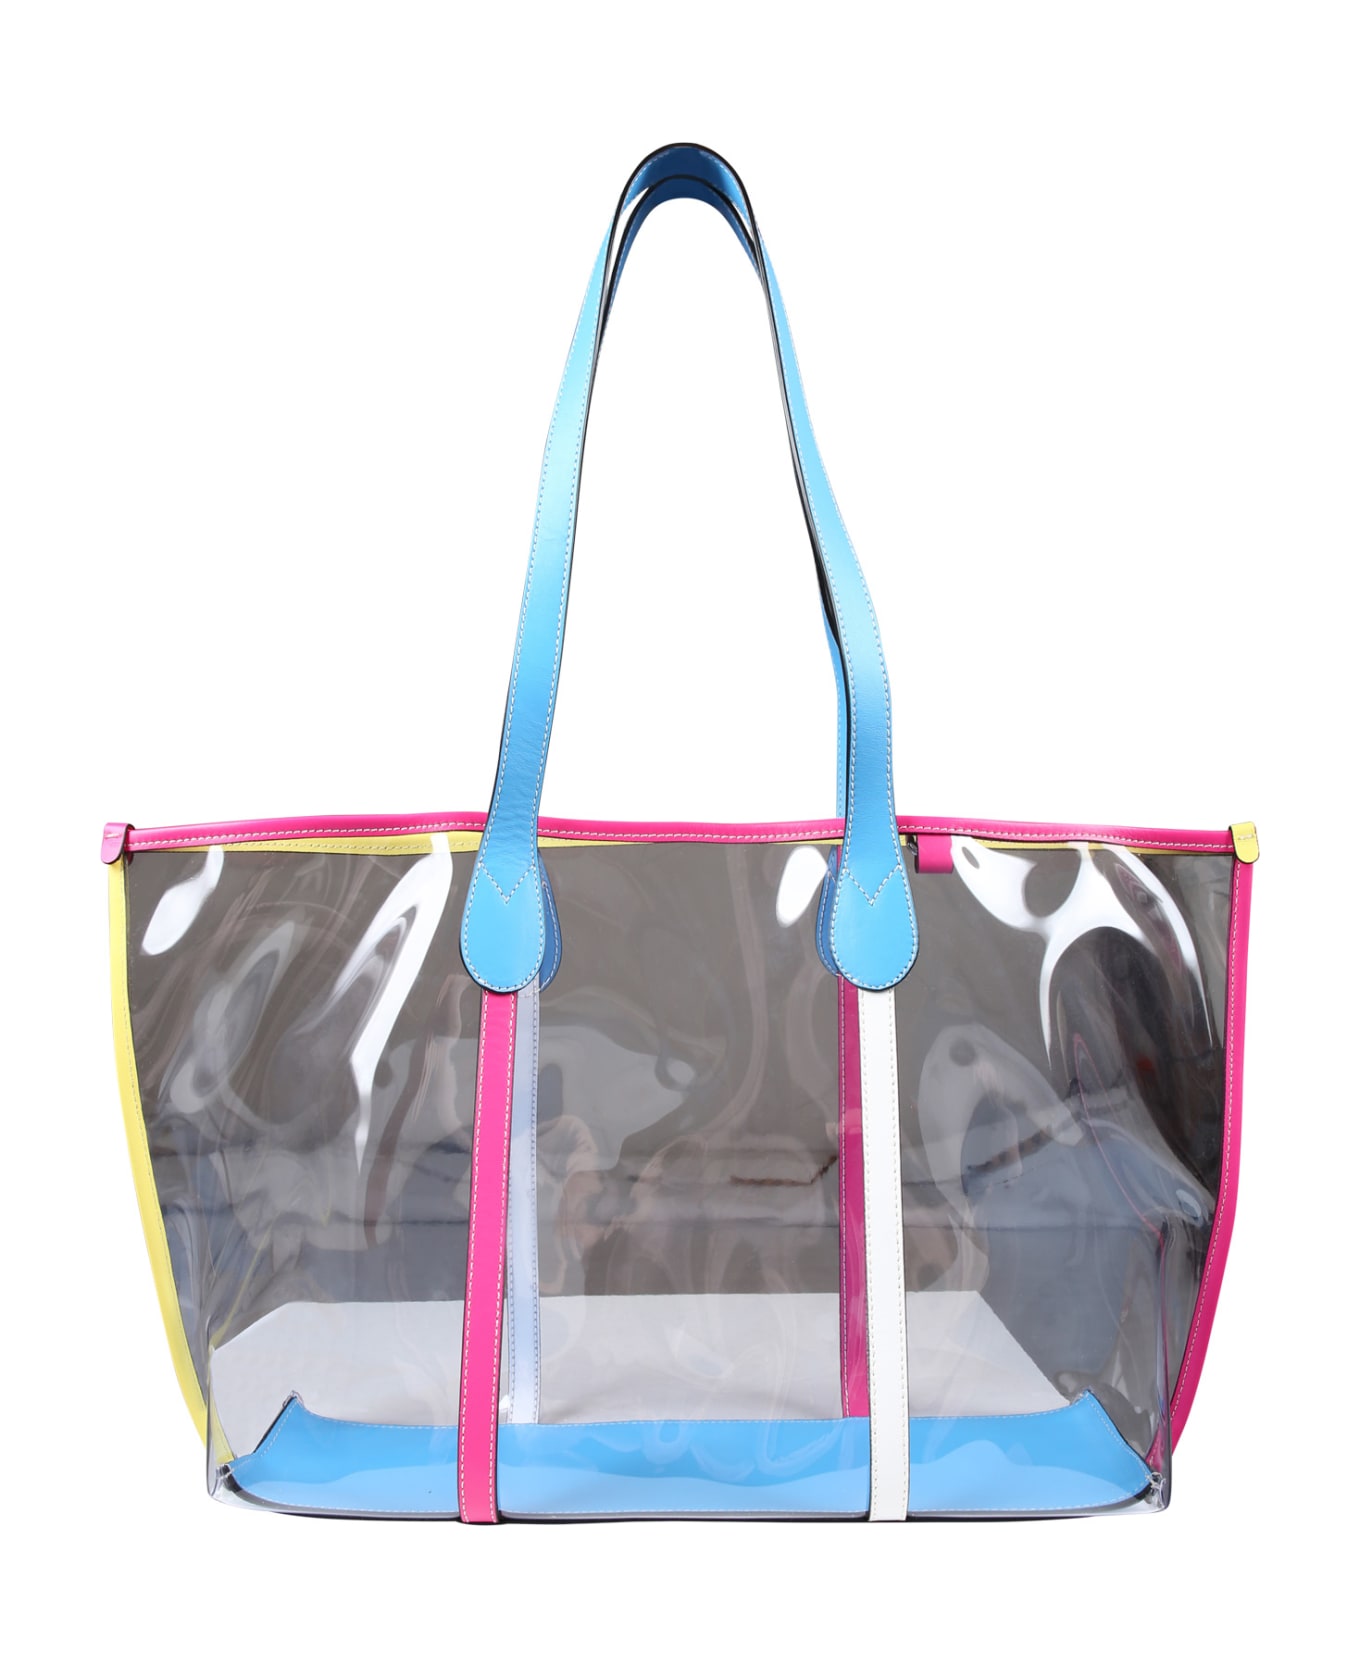 Missoni Multicolor Beach Bag For Girl - Multicolor